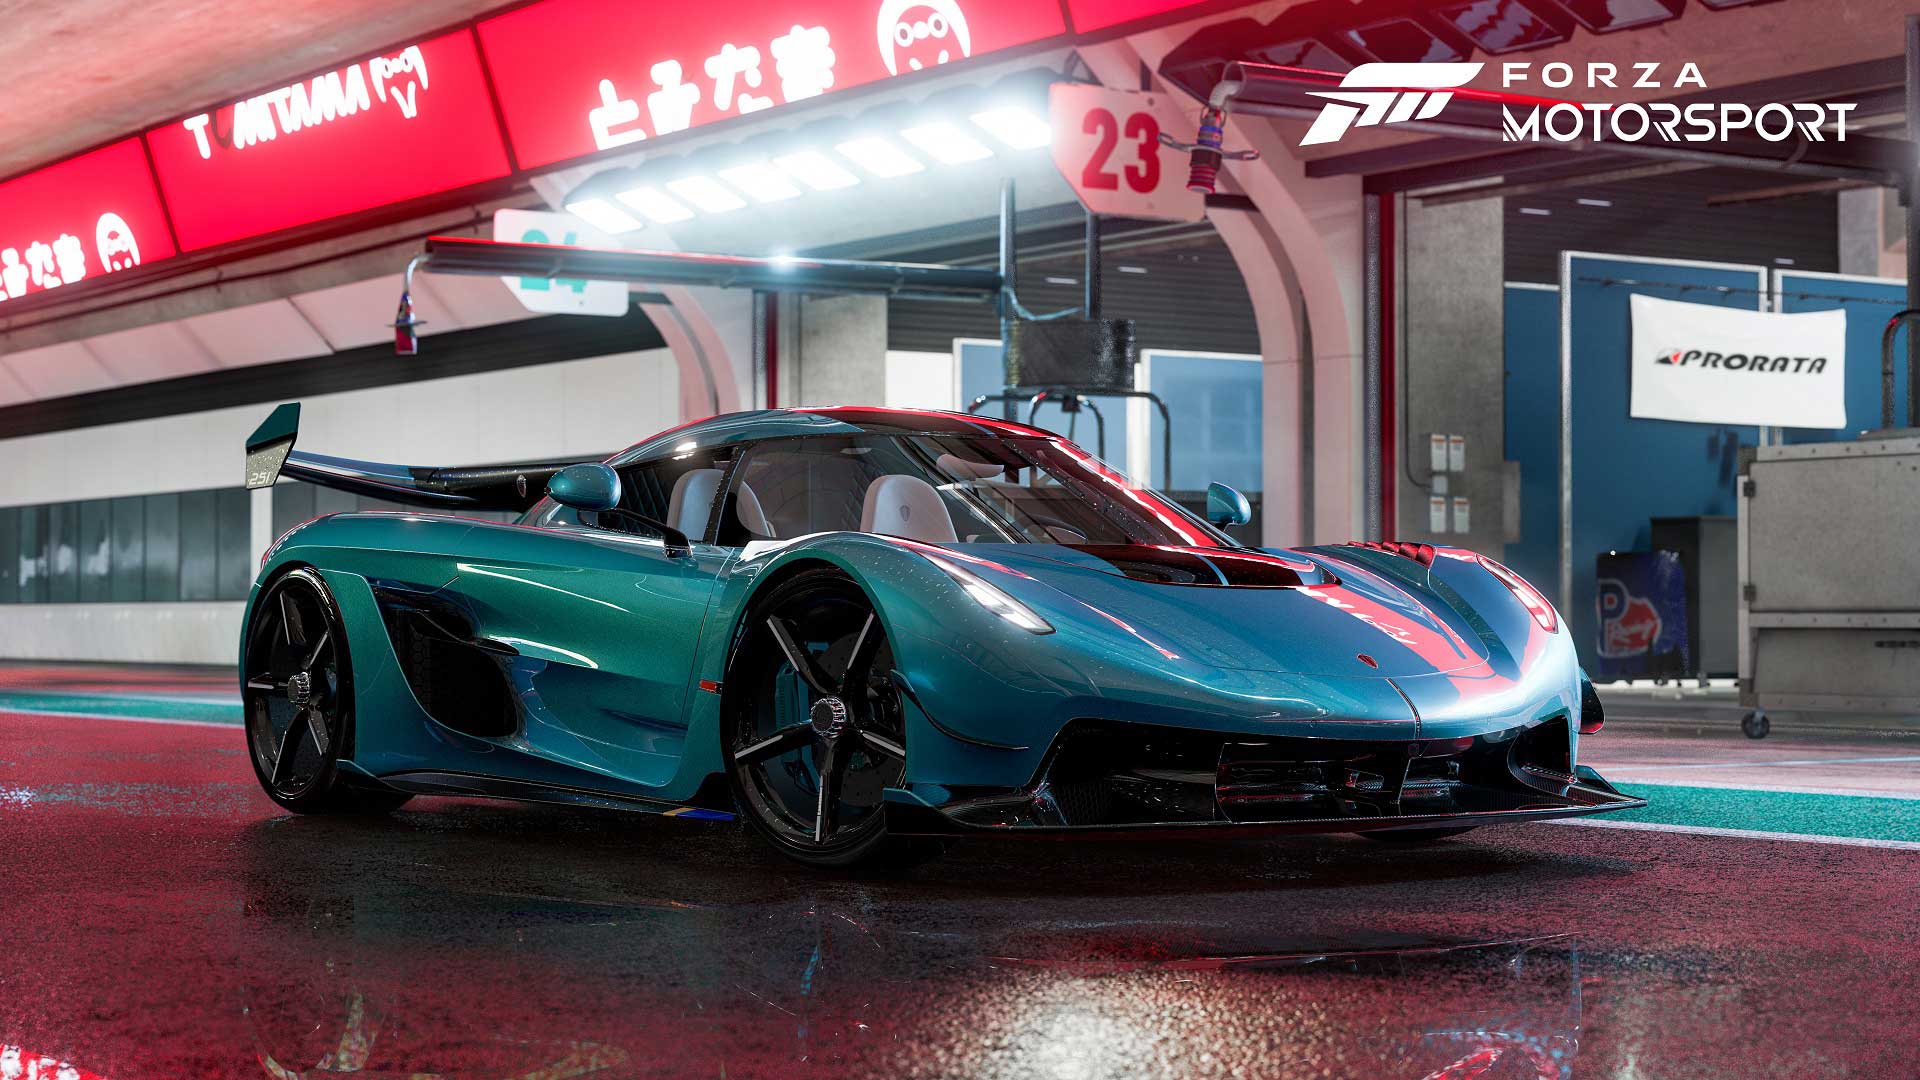 نورپردازی زیبا و رنگ جذاب ماشین در بازی Forza Motorsport